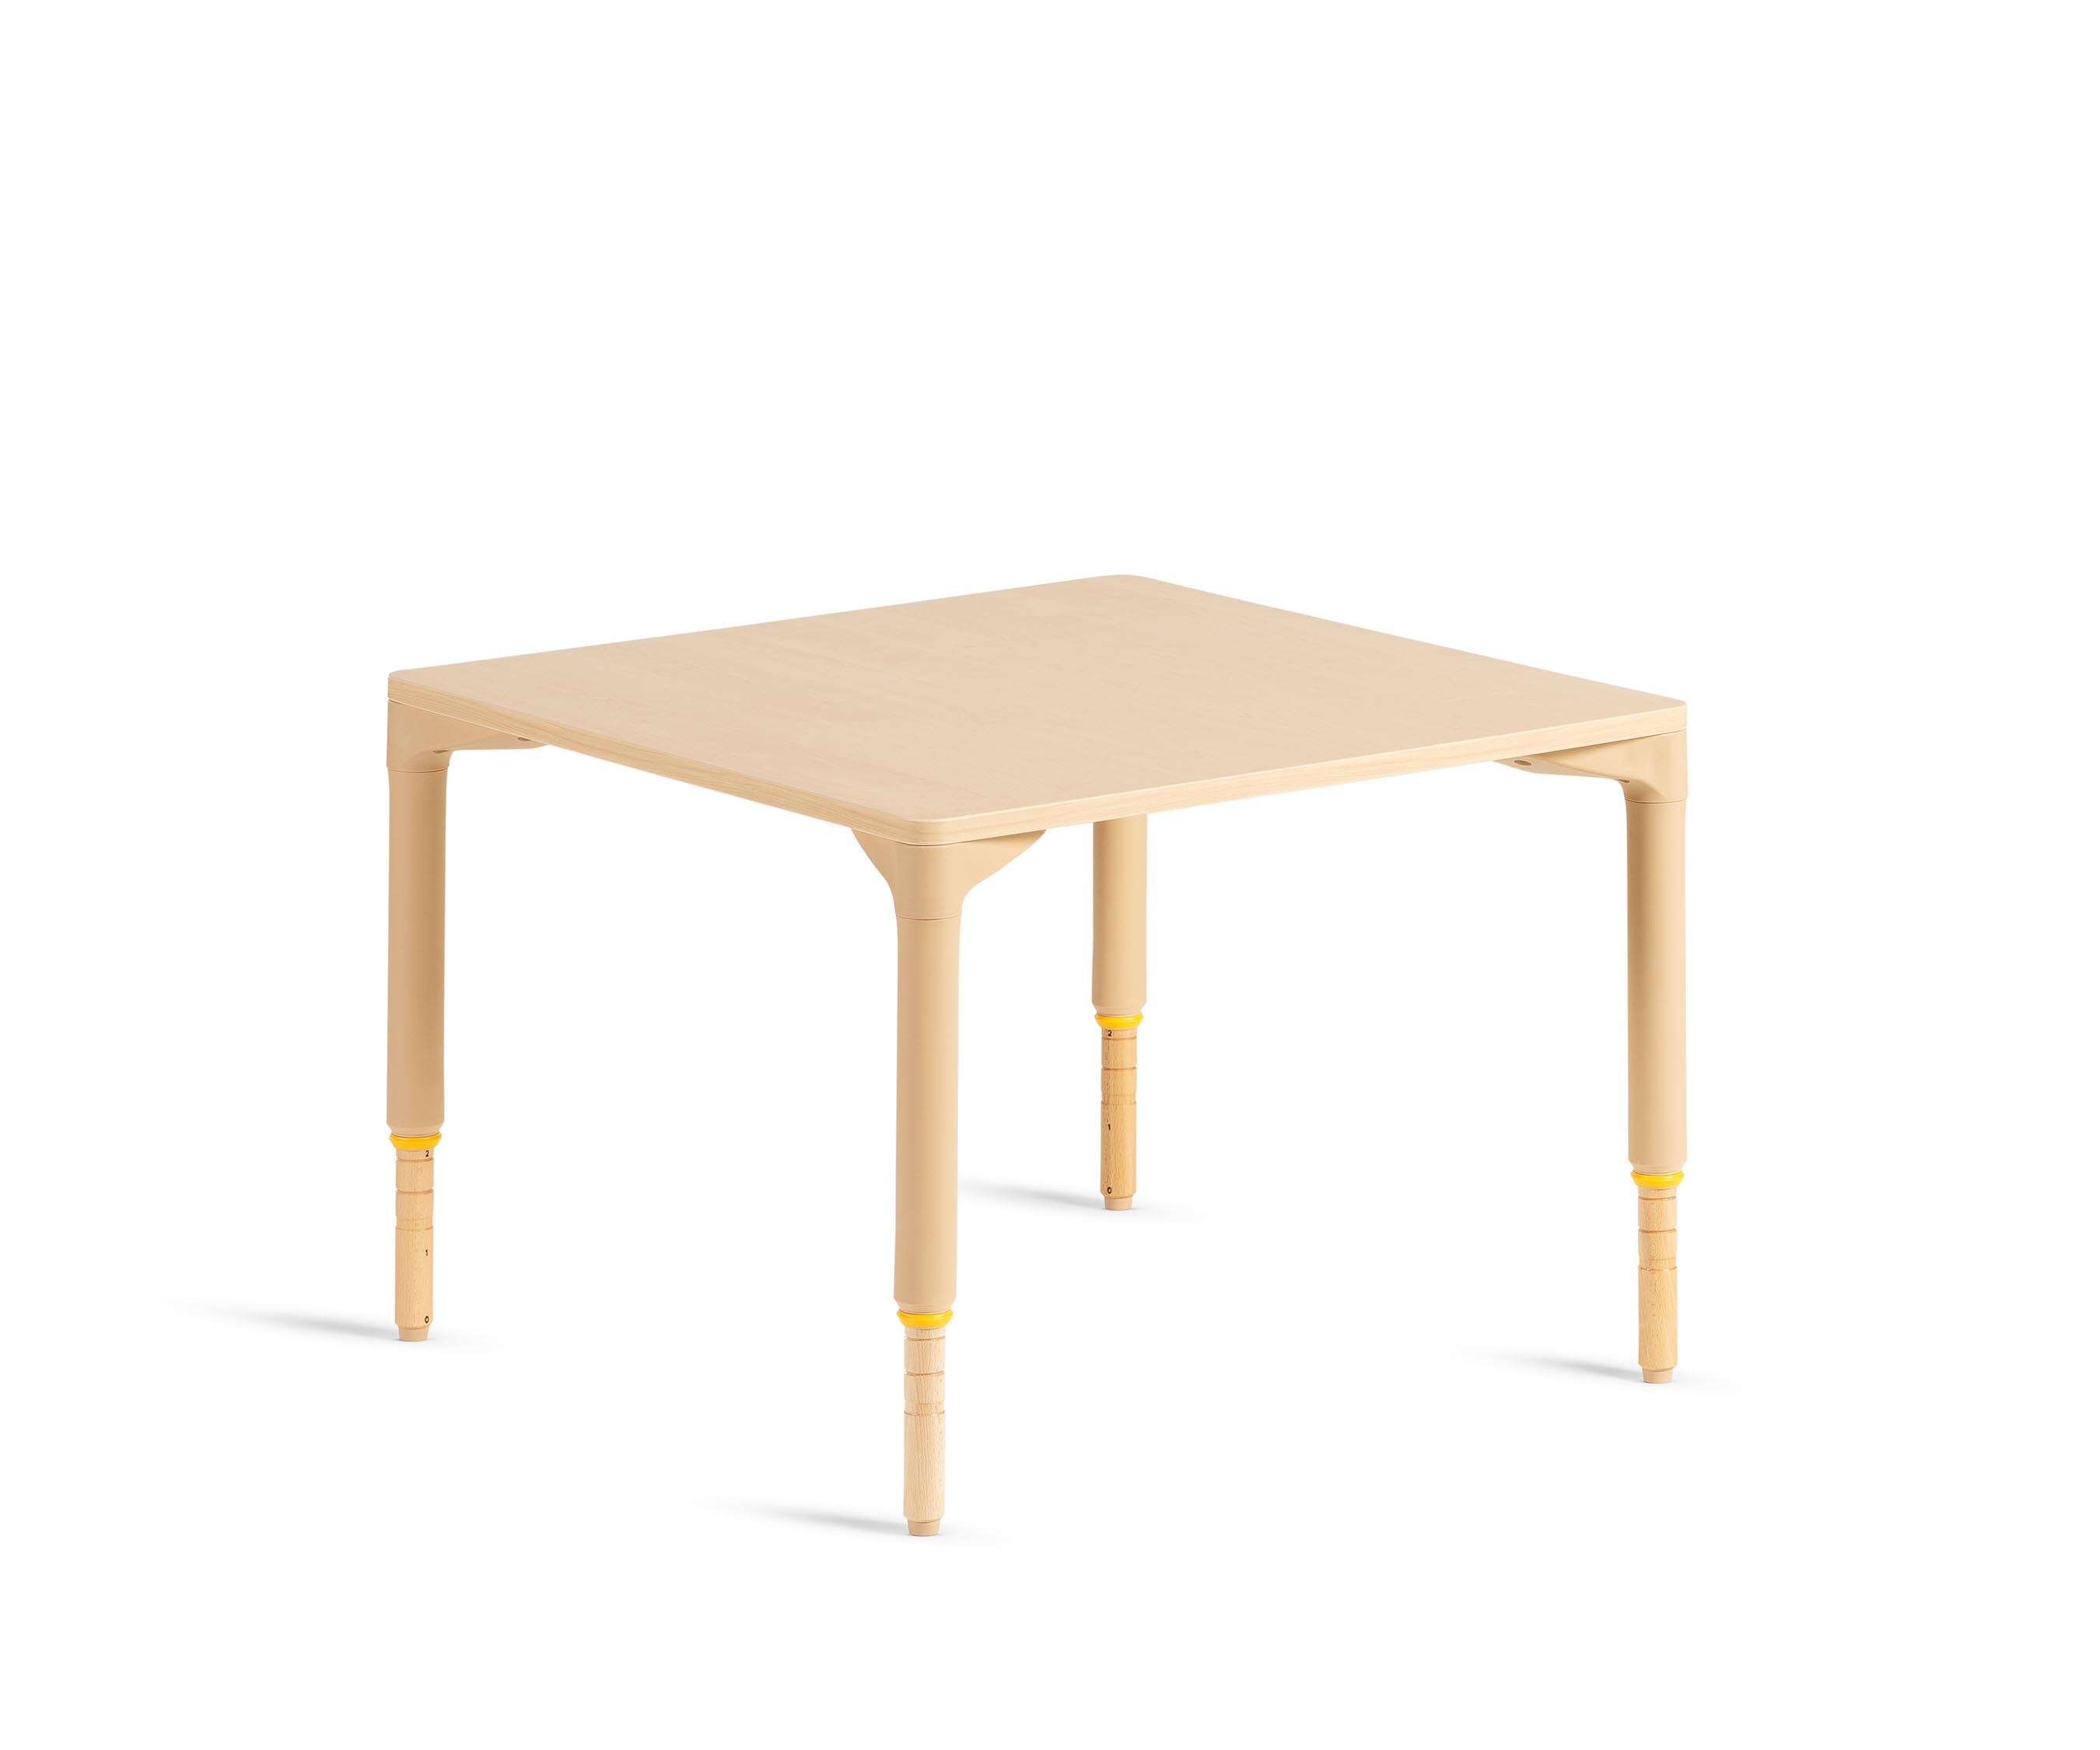 76 x 76 cm Table, Medium